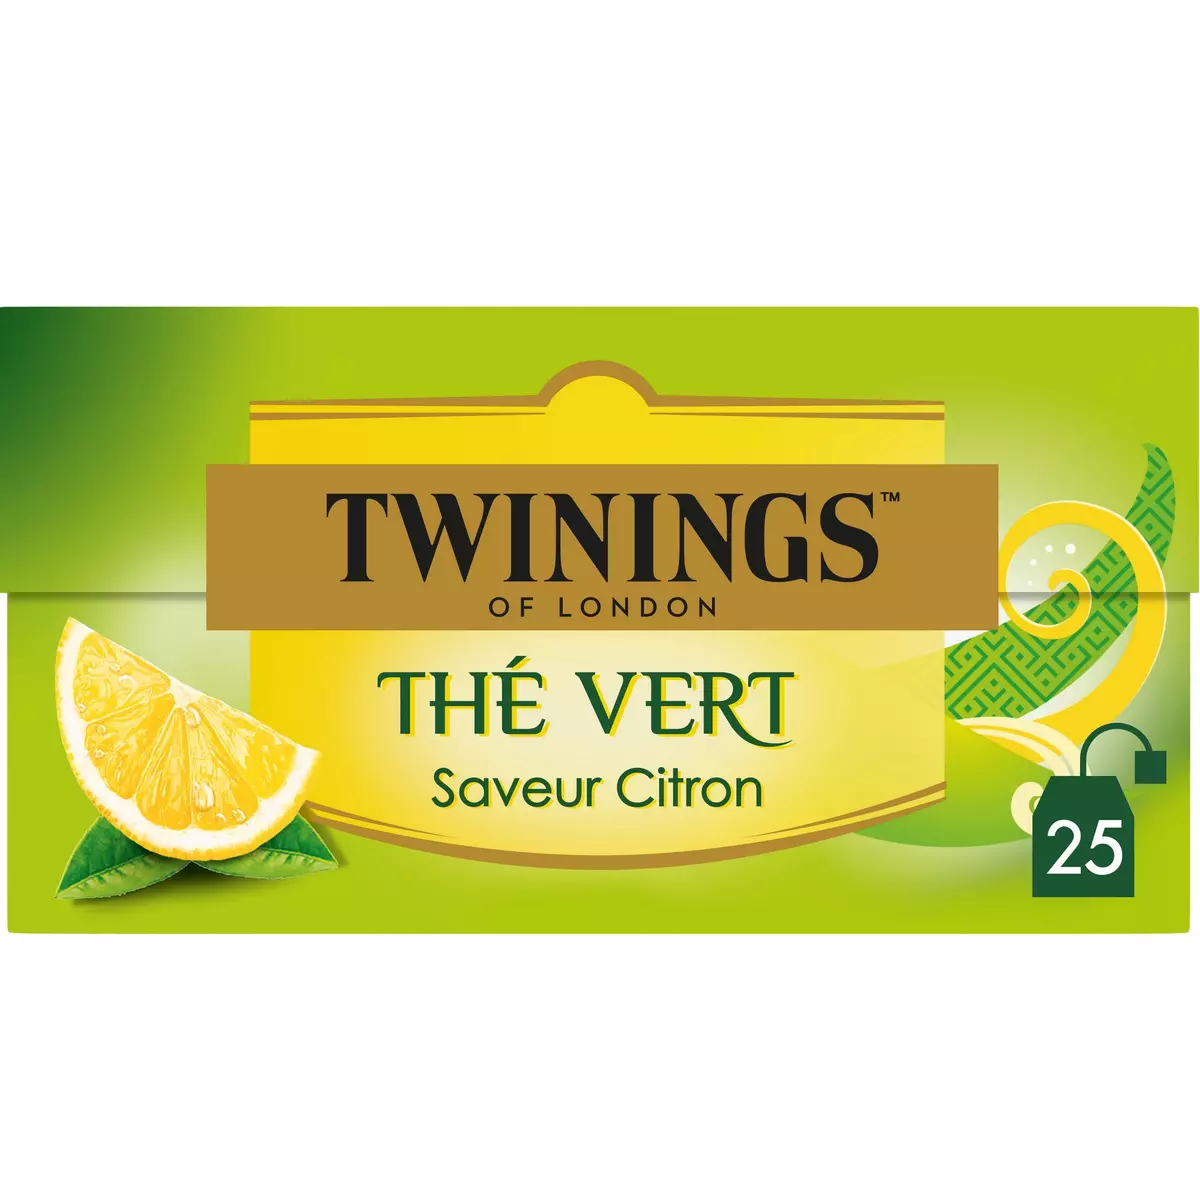 Thé vert au citron - 20 sachets - Boîte 32g